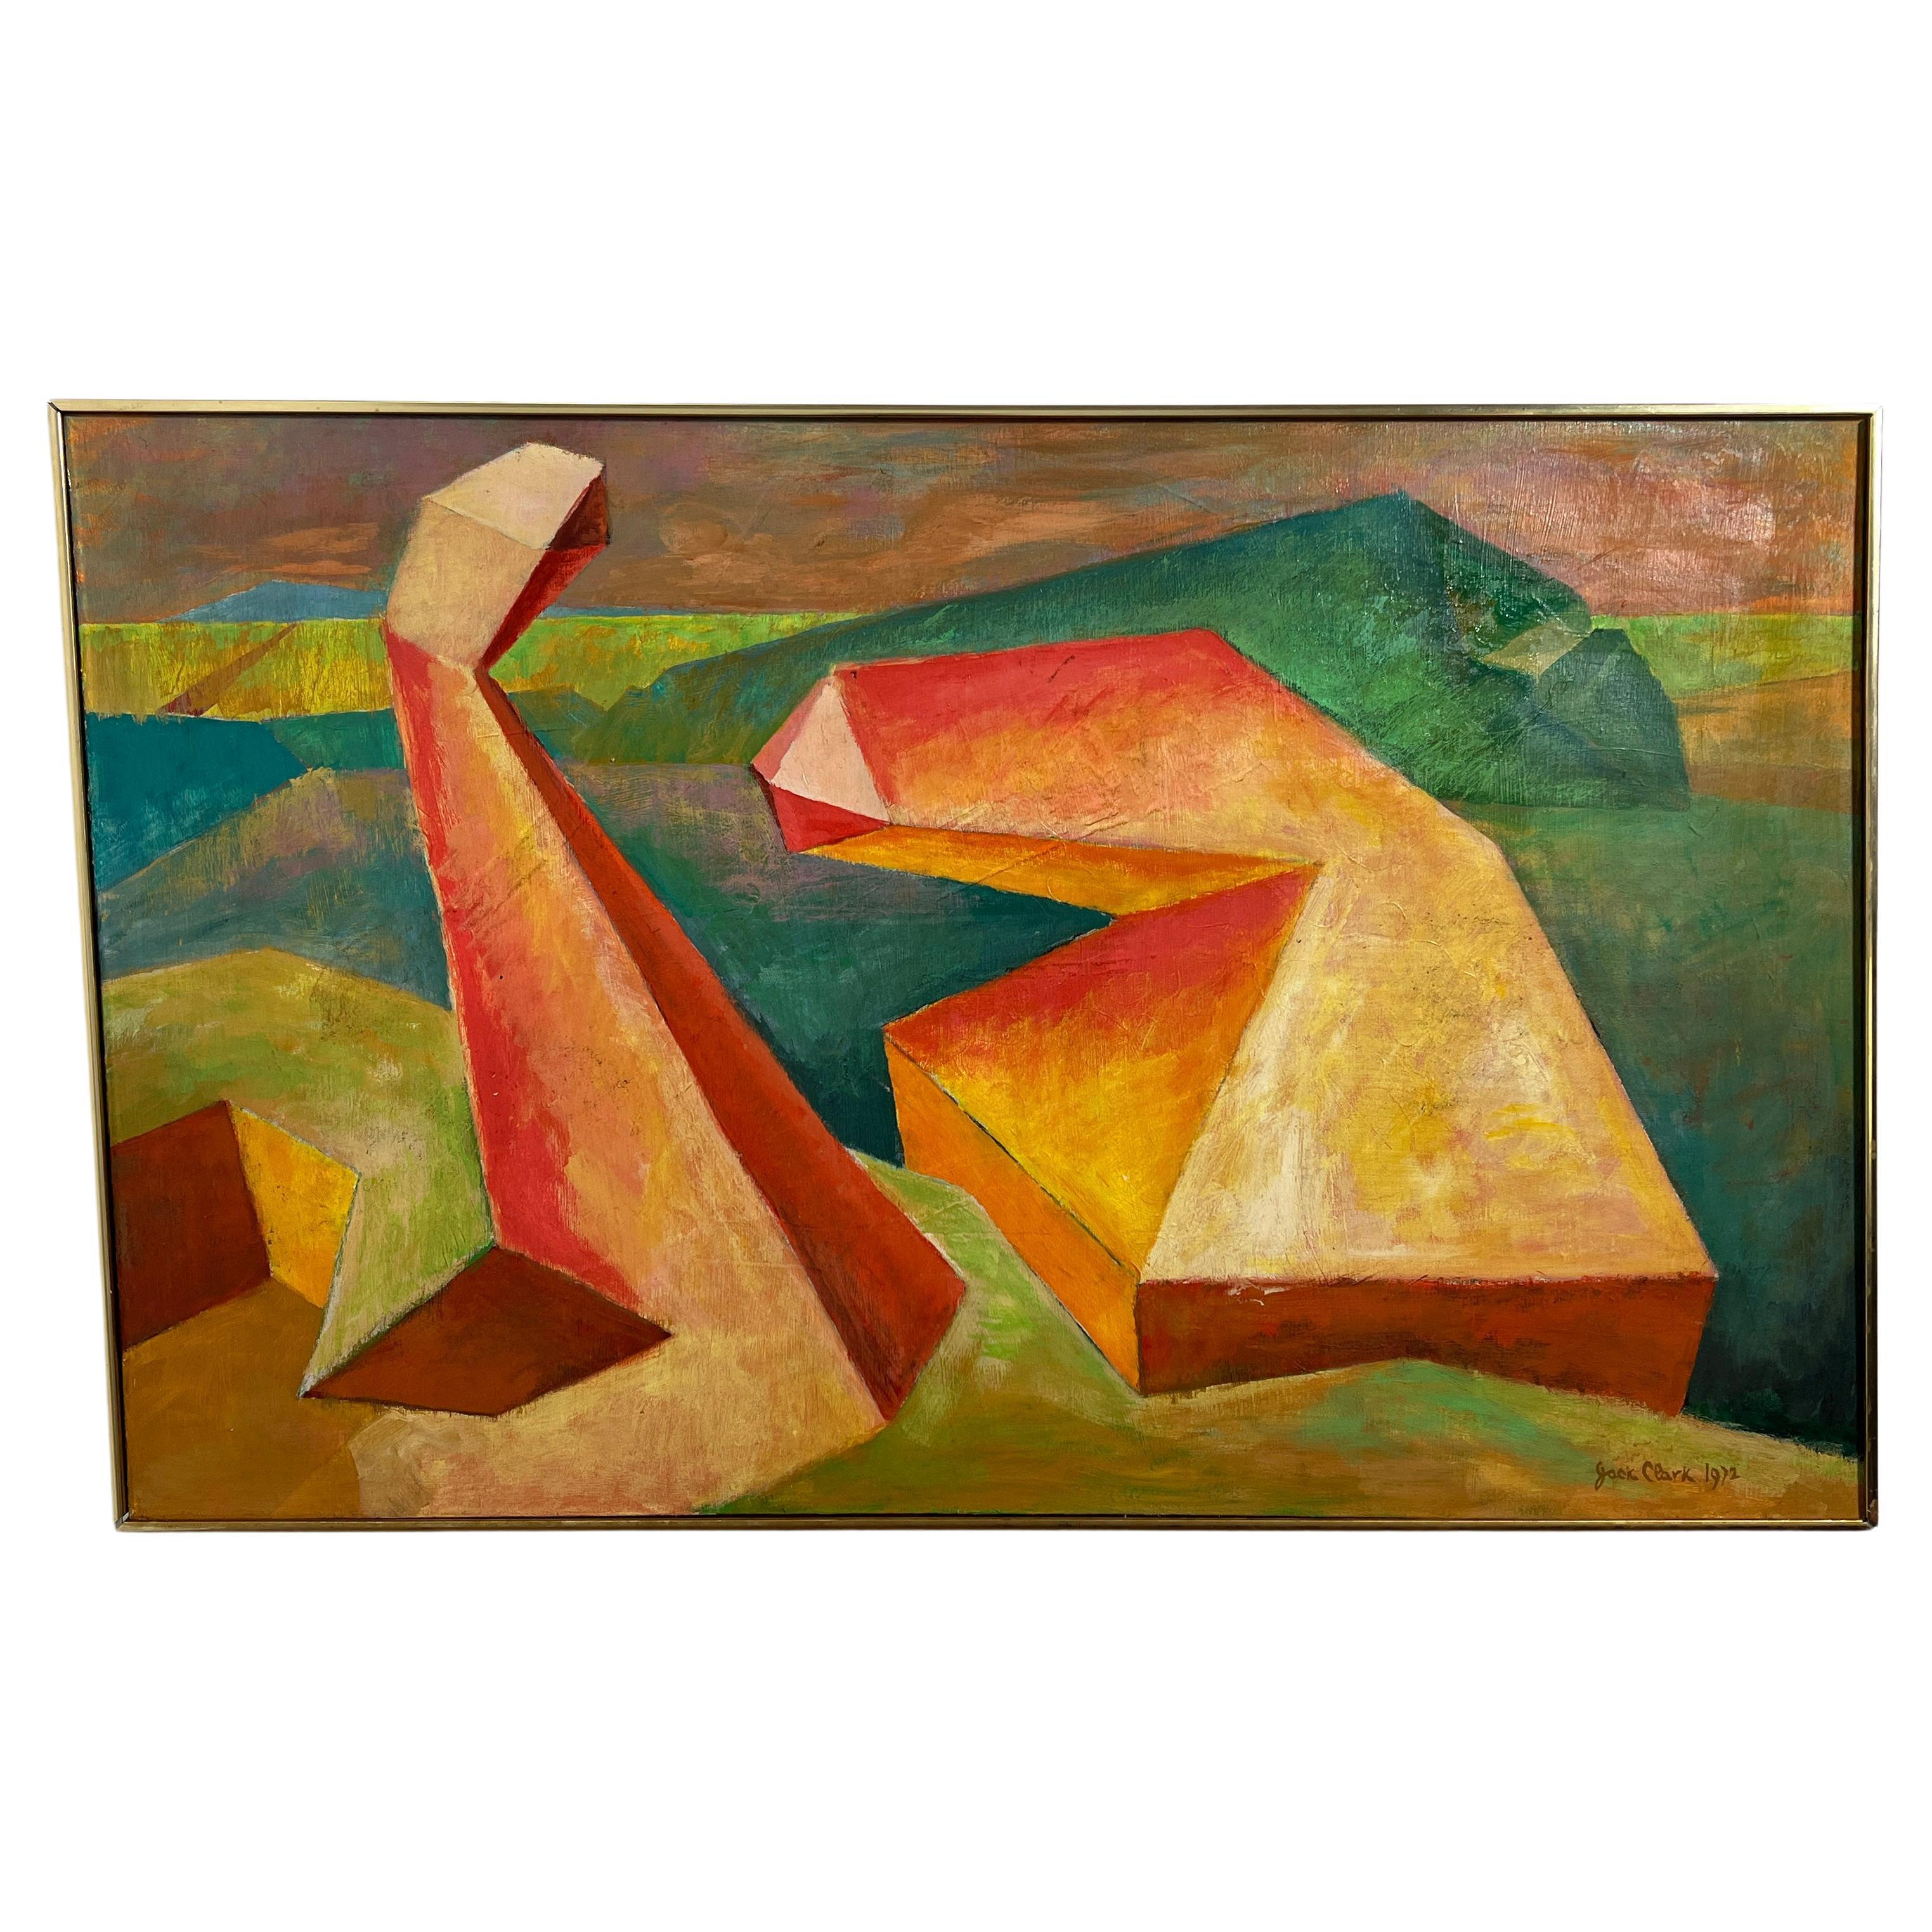 Grande peinture abstraite de paysage cubiste signée Jack Clark, mort en 1972